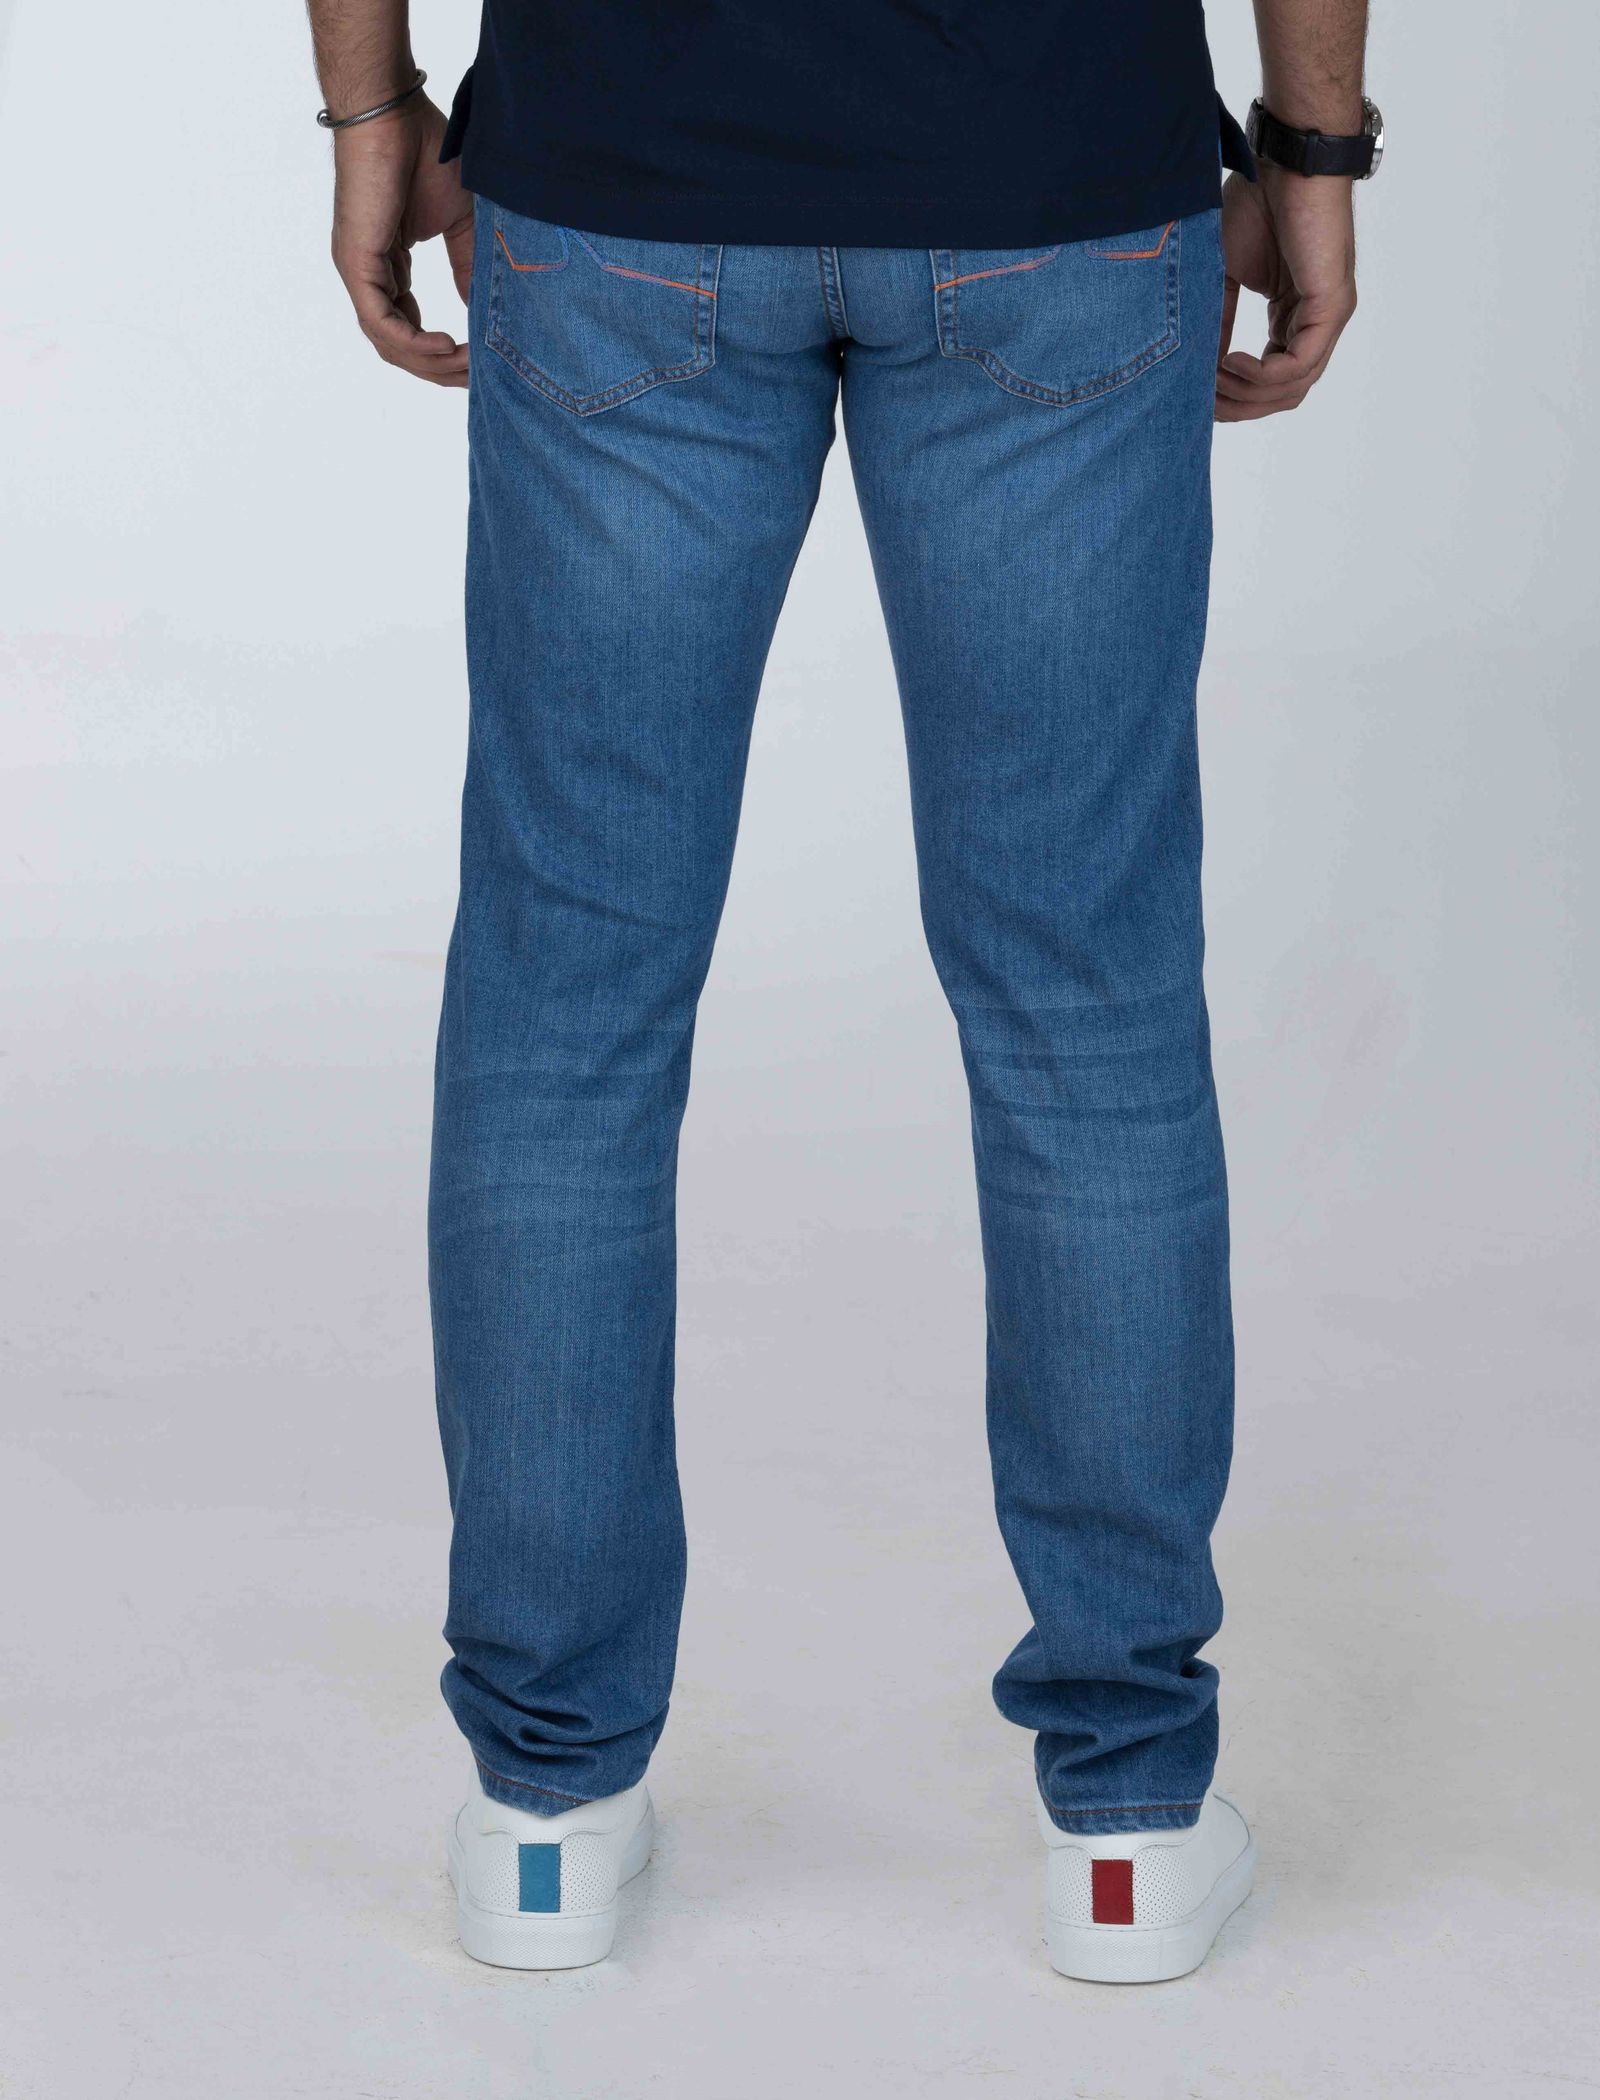 شلوار جین راسته مردانه - پاول اند شارک - آبي - 7